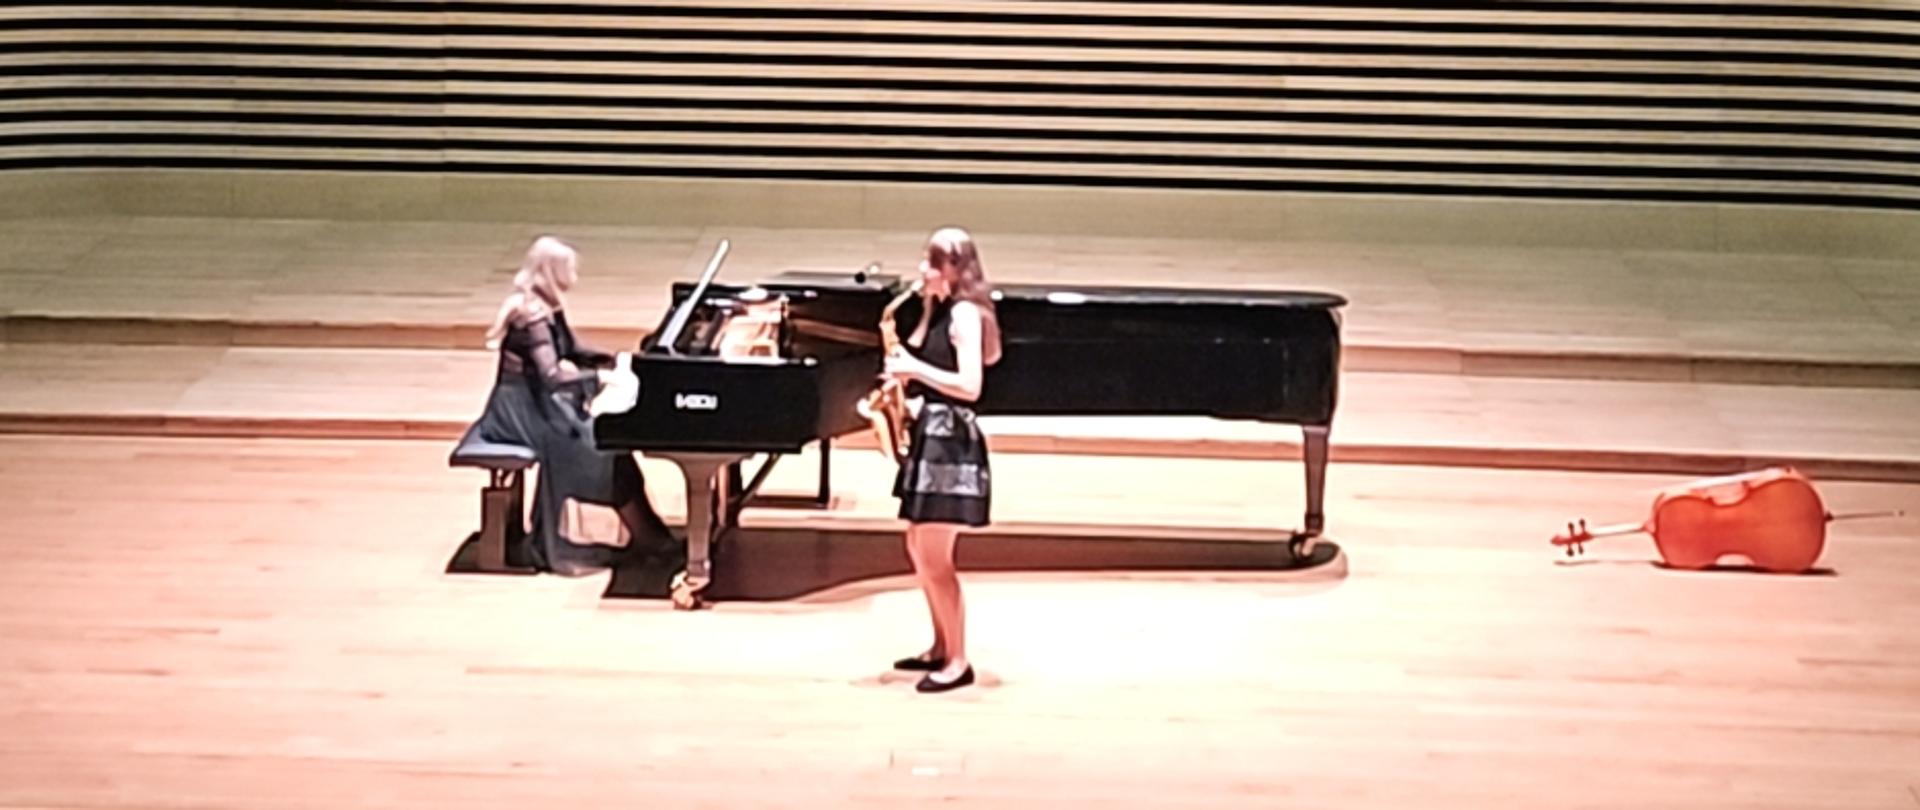 Nastolatka stojąc na estradzie sali koncertowej gra na saksofonie, za nią kobita gra na fortepianie. Z przodu widać od tyłu fragment widowni.